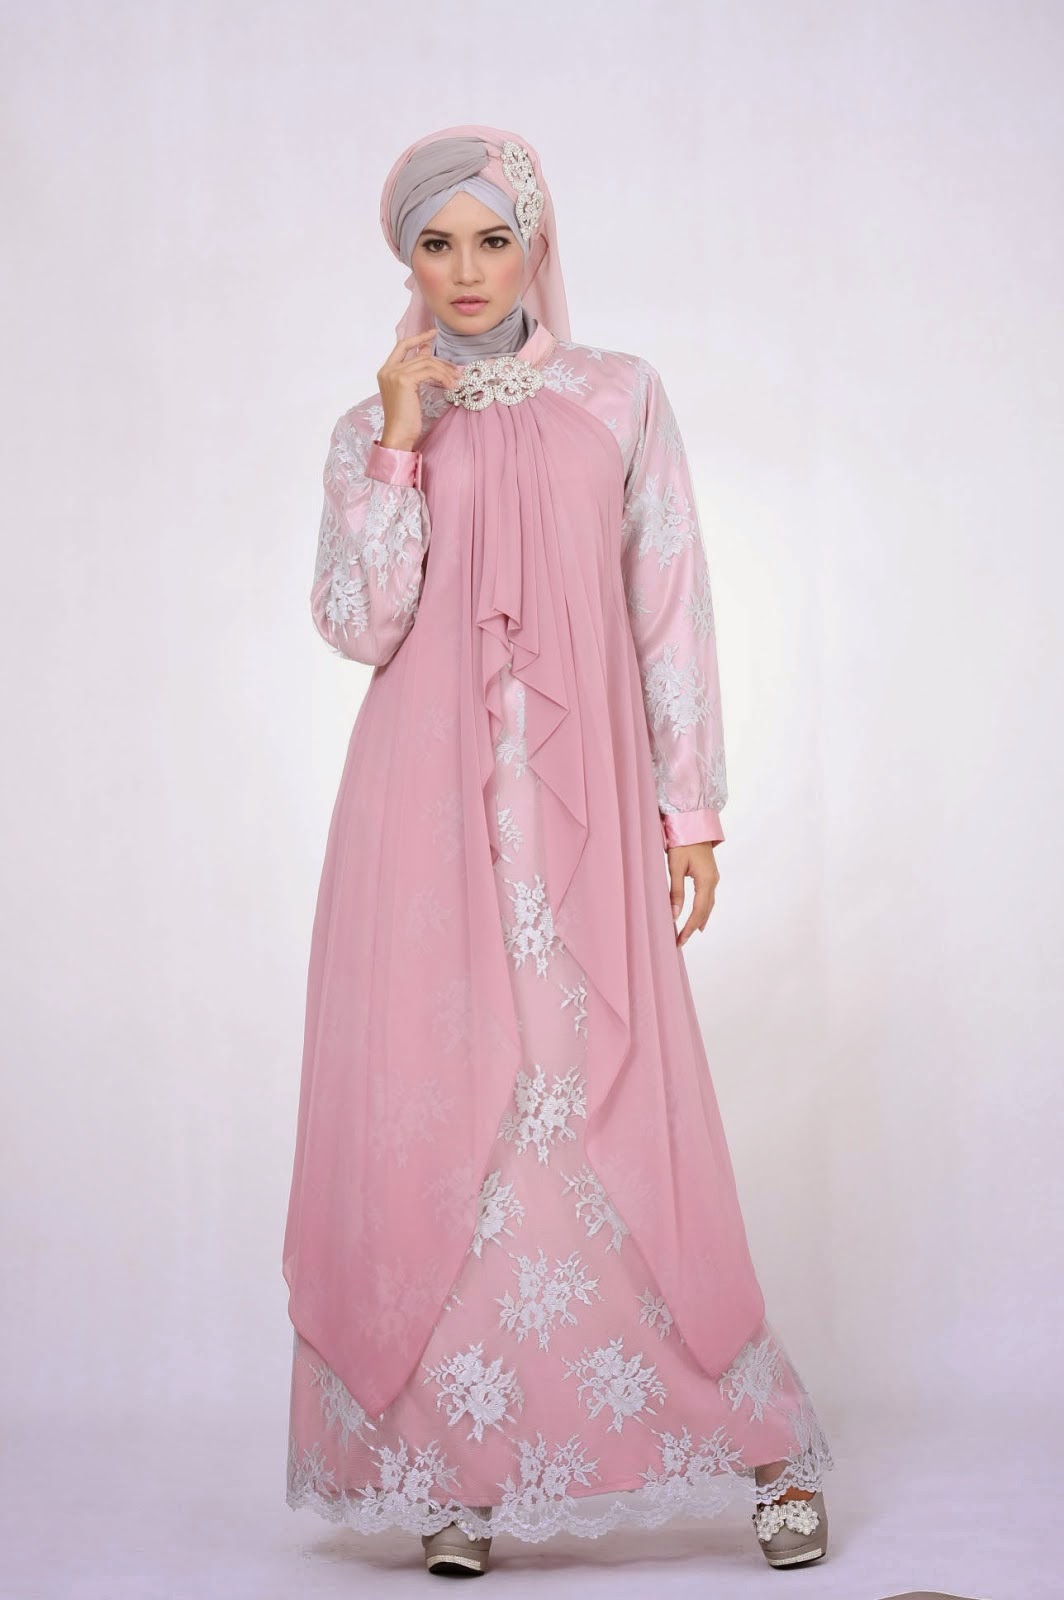 16 Contoh Desain Baju Gaun Muslim Wanita Terbaru 2015 Nayladream